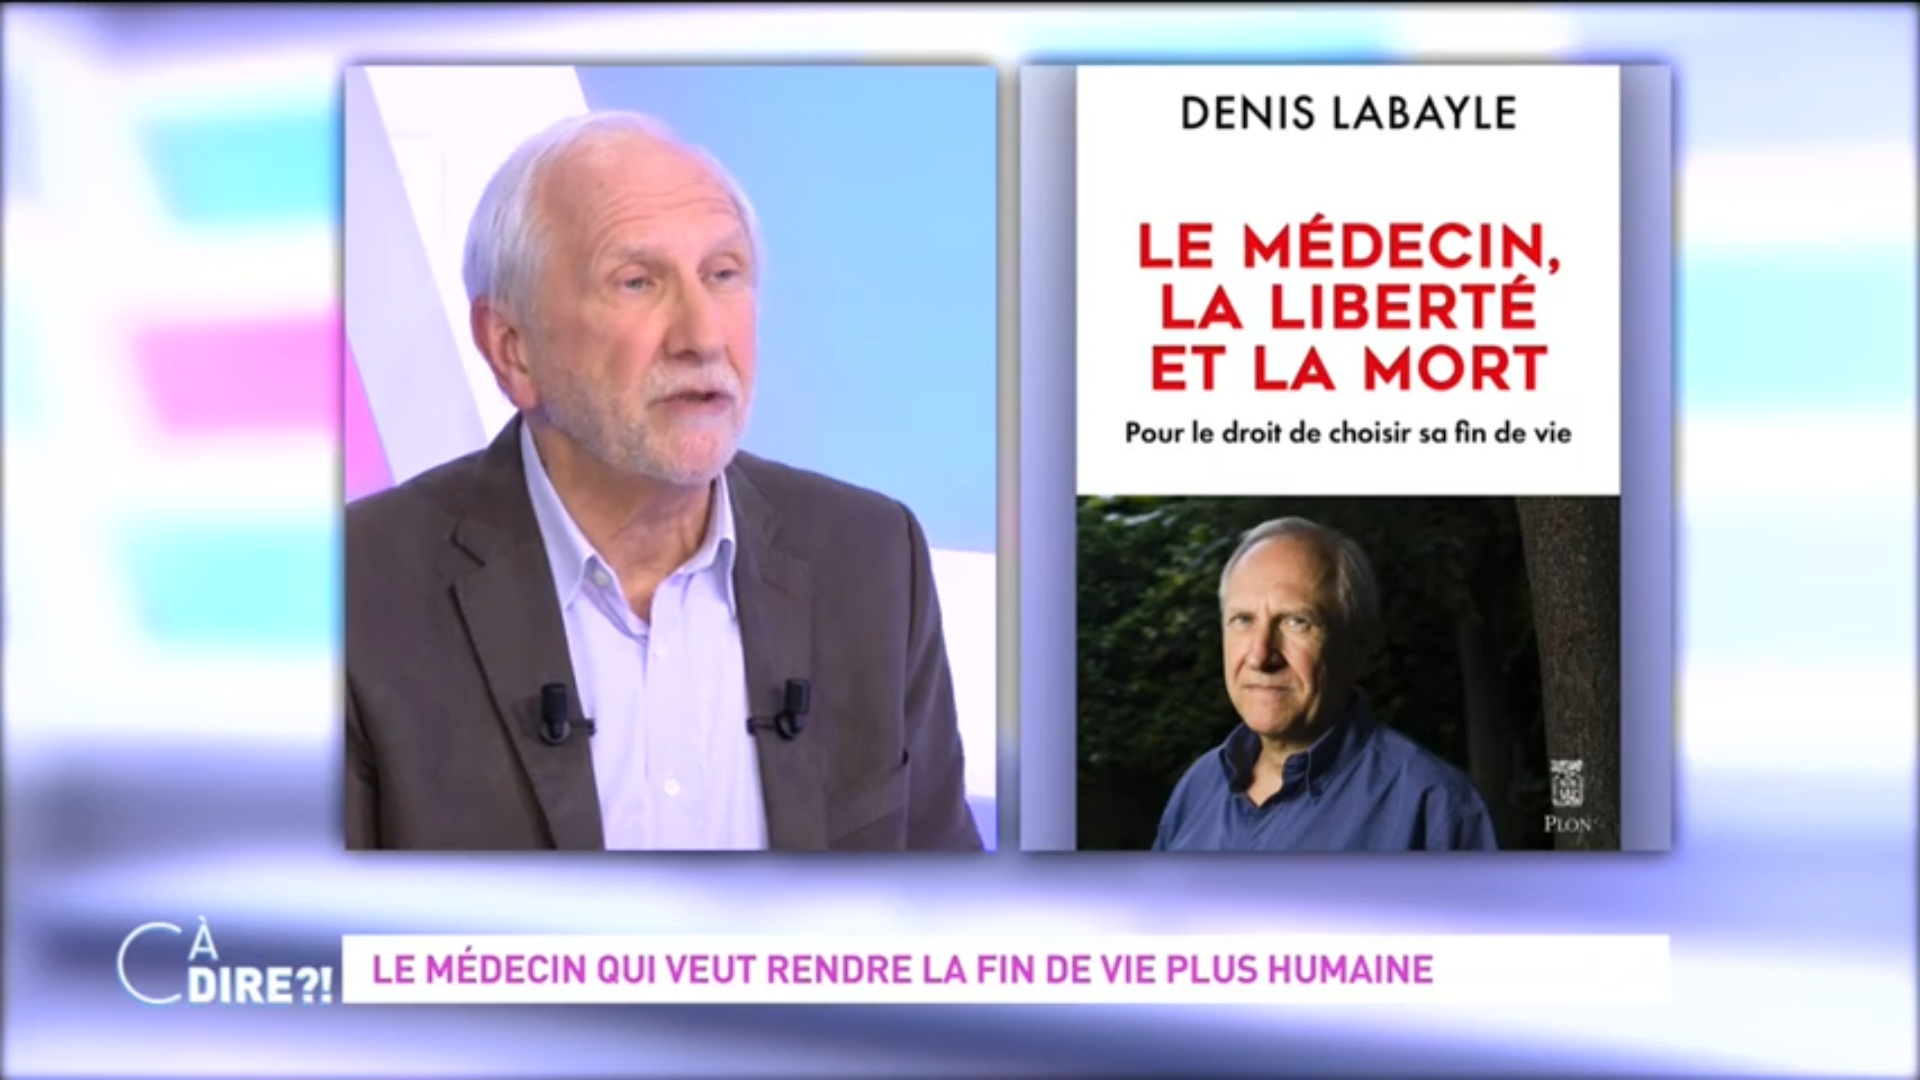 Le médecin, la liberté et la mort - Denis Labayle